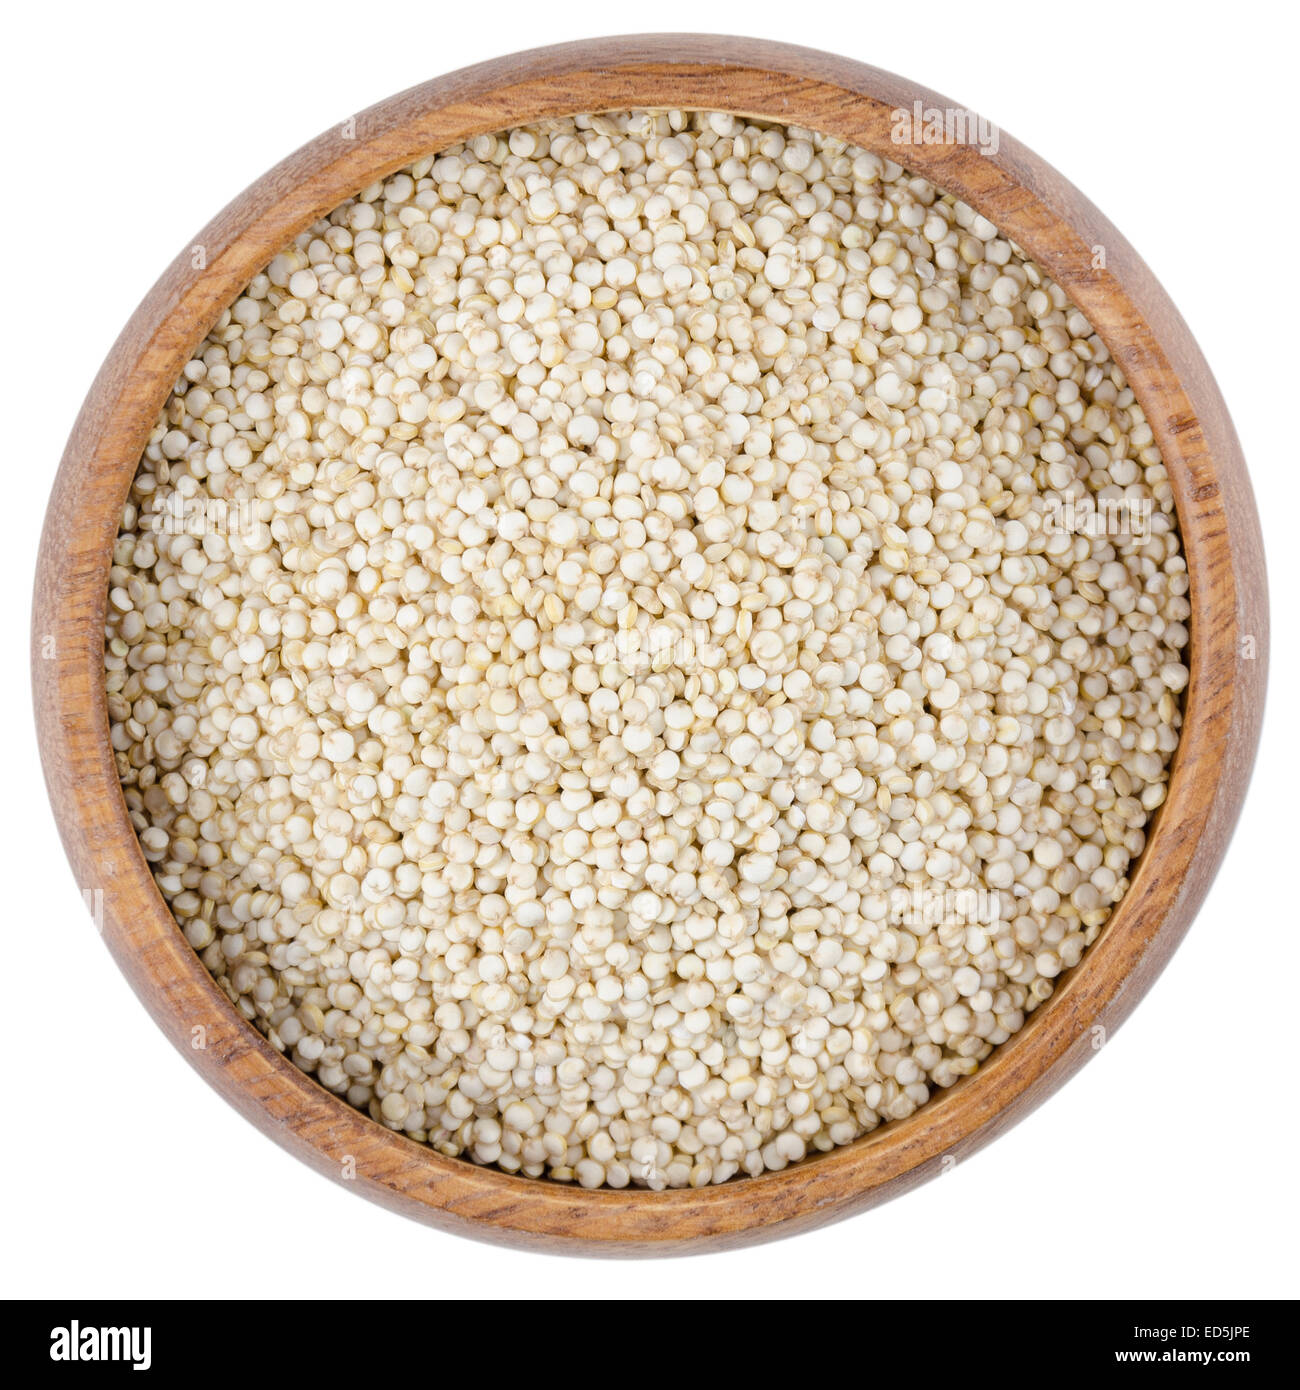 Les graines de quinoa dans un bol. Les graines de quinoa cru dans un bol en bois d'en haut, isolé sur fond blanc. Banque D'Images